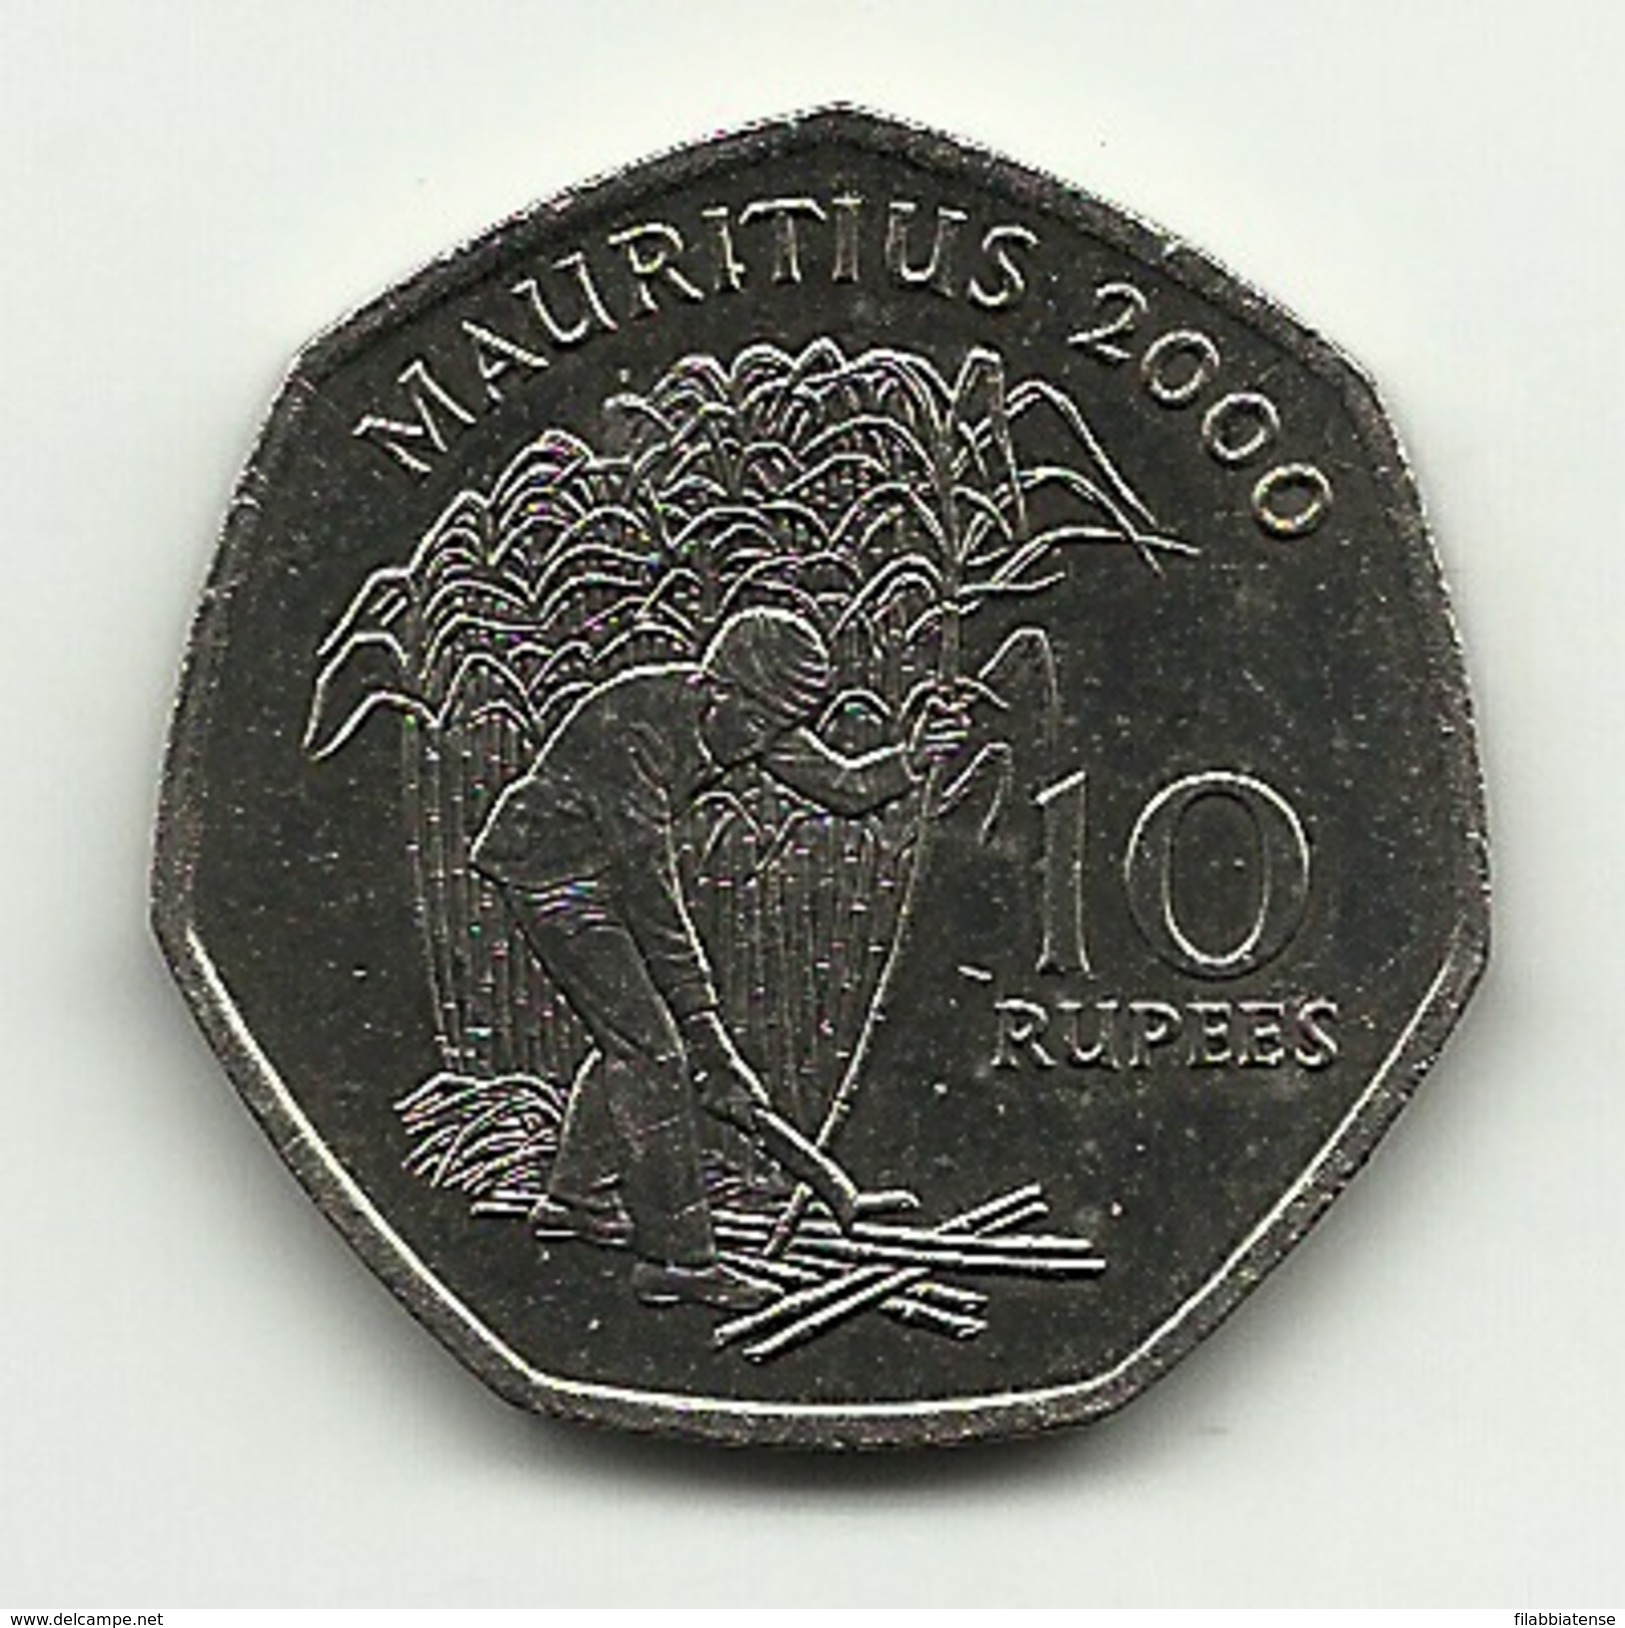 2000 - Mauritius 10 Rupees, - Mauritius